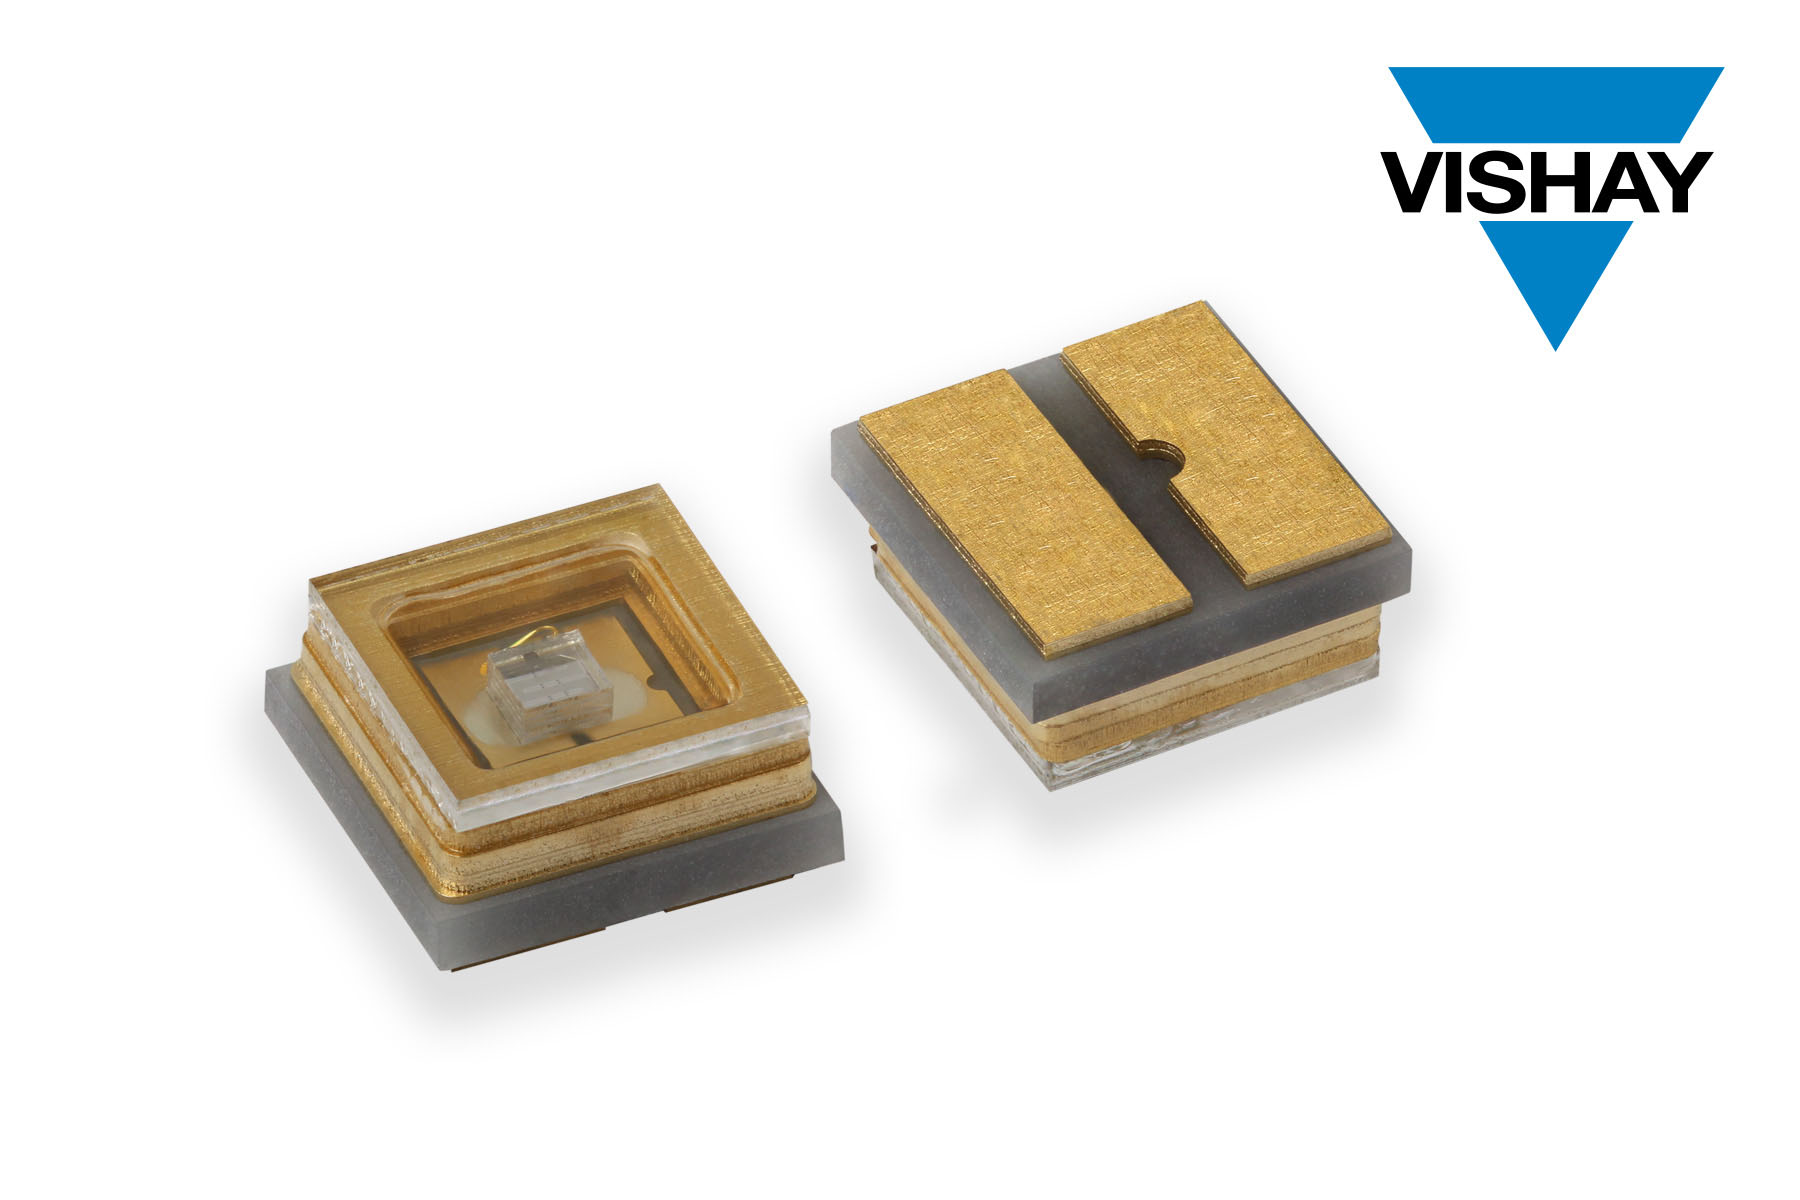 Vishay新款UVC发光二极管，采用陶瓷/石英基材，光照强度高于上一代解决方案，同时降低成本